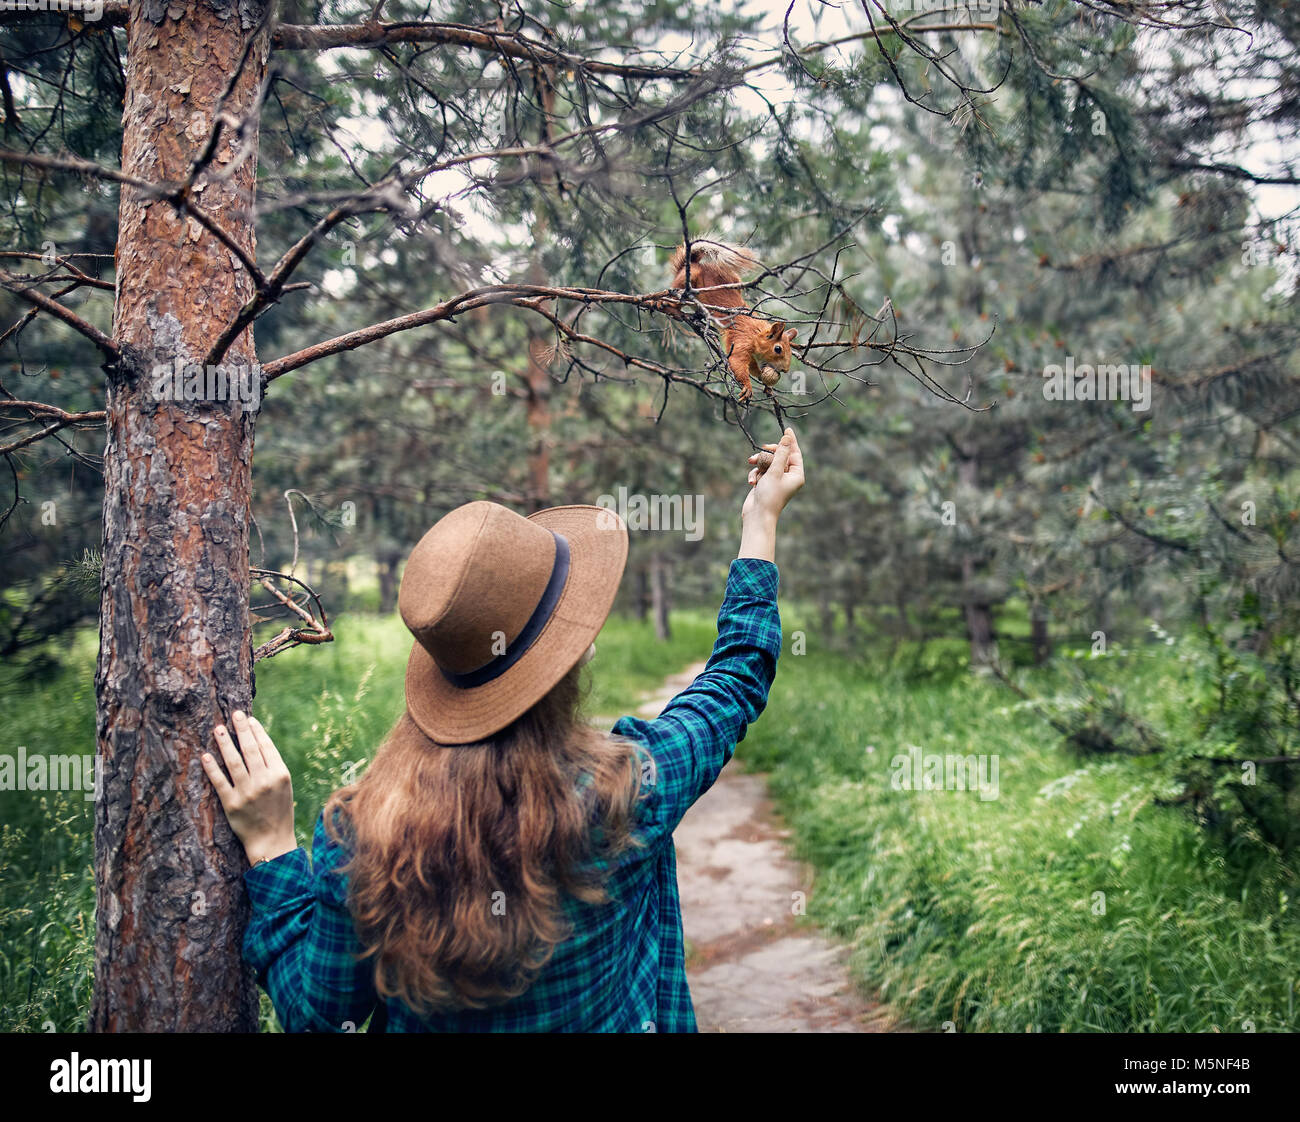 Jeune Femme au chapeau avec cheveux longs écureuil drôle d'alimentation dans une forêt de pins Banque D'Images